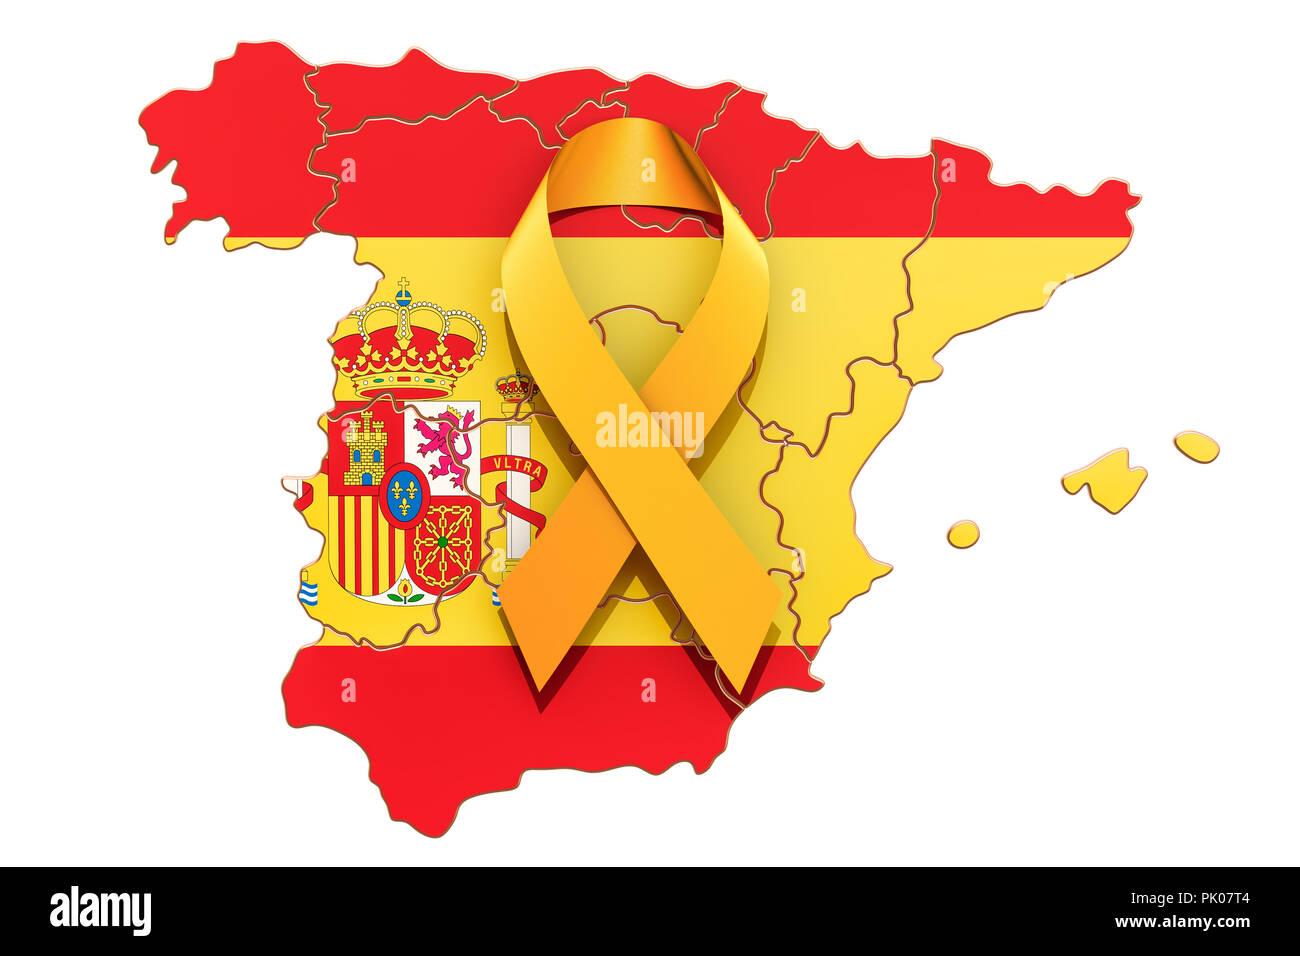 Ruban jaune sur la carte espagnole. Concept de l'indépendance de la Catalogne, rendu 3D isolé sur fond blanc Banque D'Images